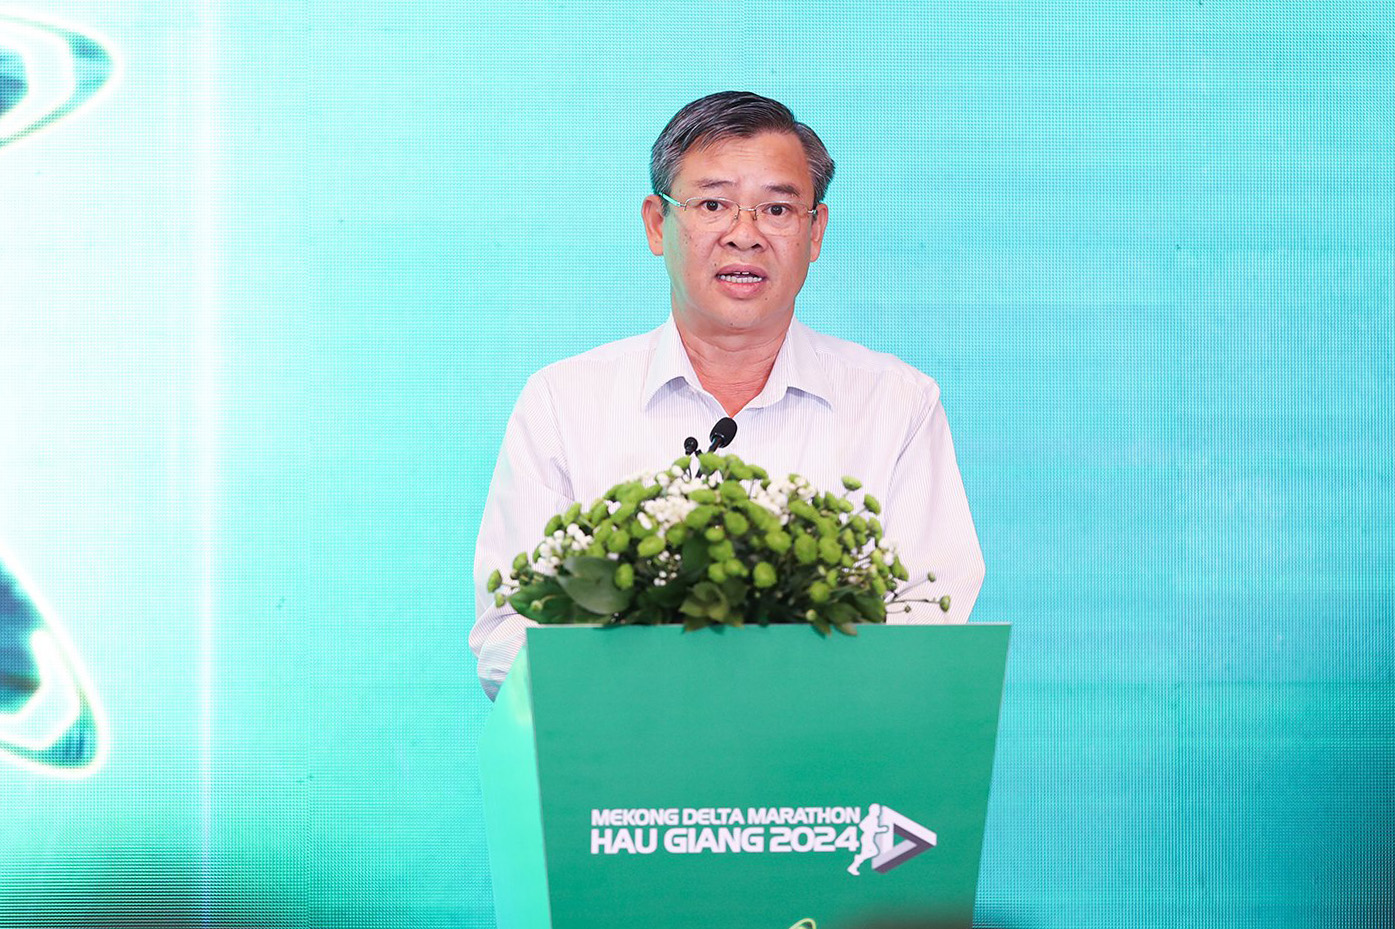 Đồng chí Trương cảnh Tuyên, Phó Chủ tịch thường trực UBND tỉnh Hậu Giang, Trưởng Ban Tổ chức giải phát biểu tại buổi họp báo.